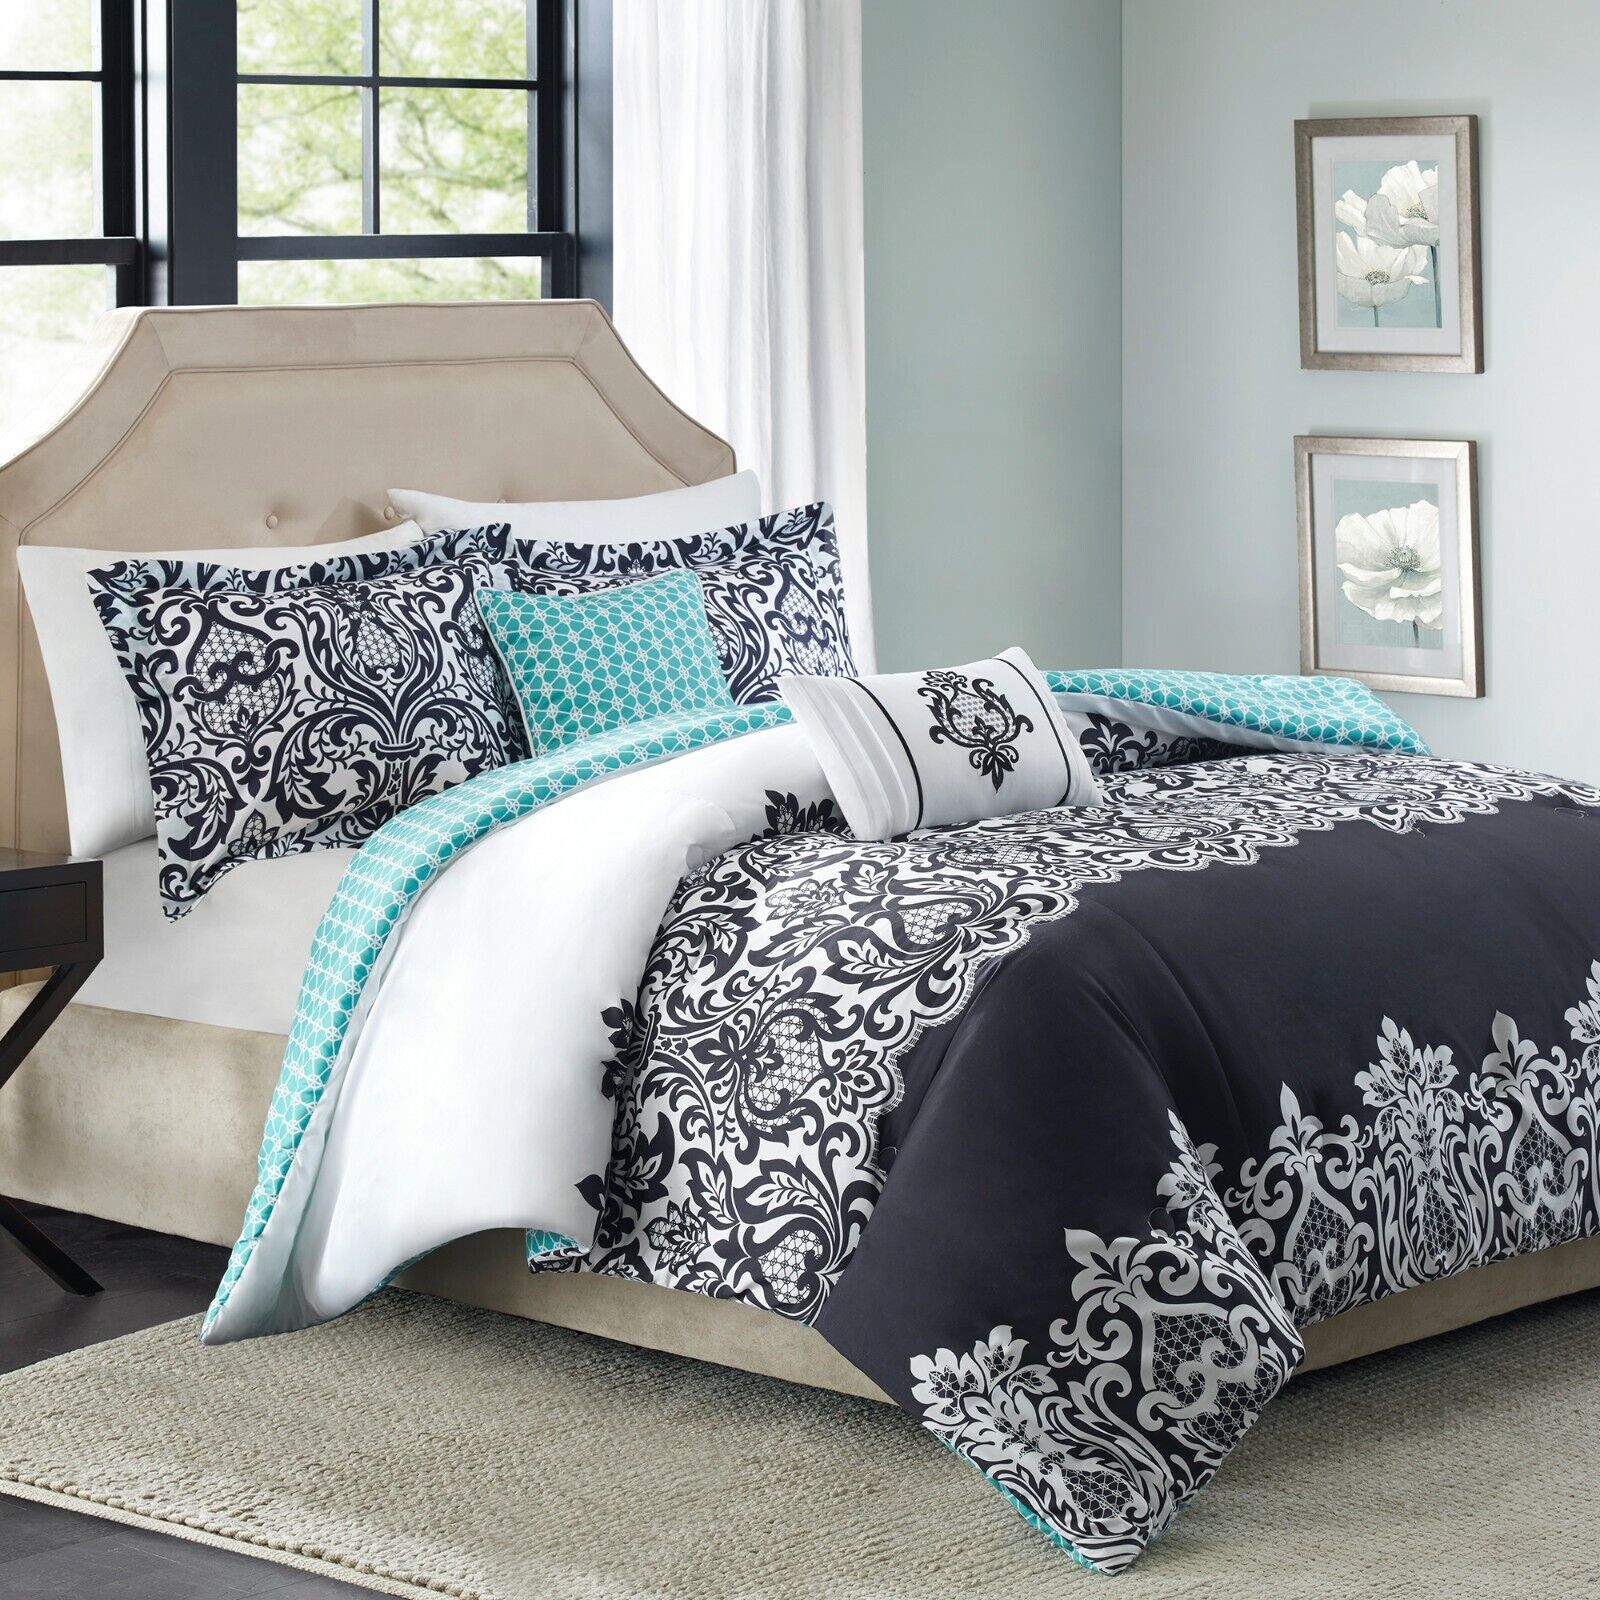 White Aqua Damask Comforter Set, Better Homes And Gardens Duvet Cover